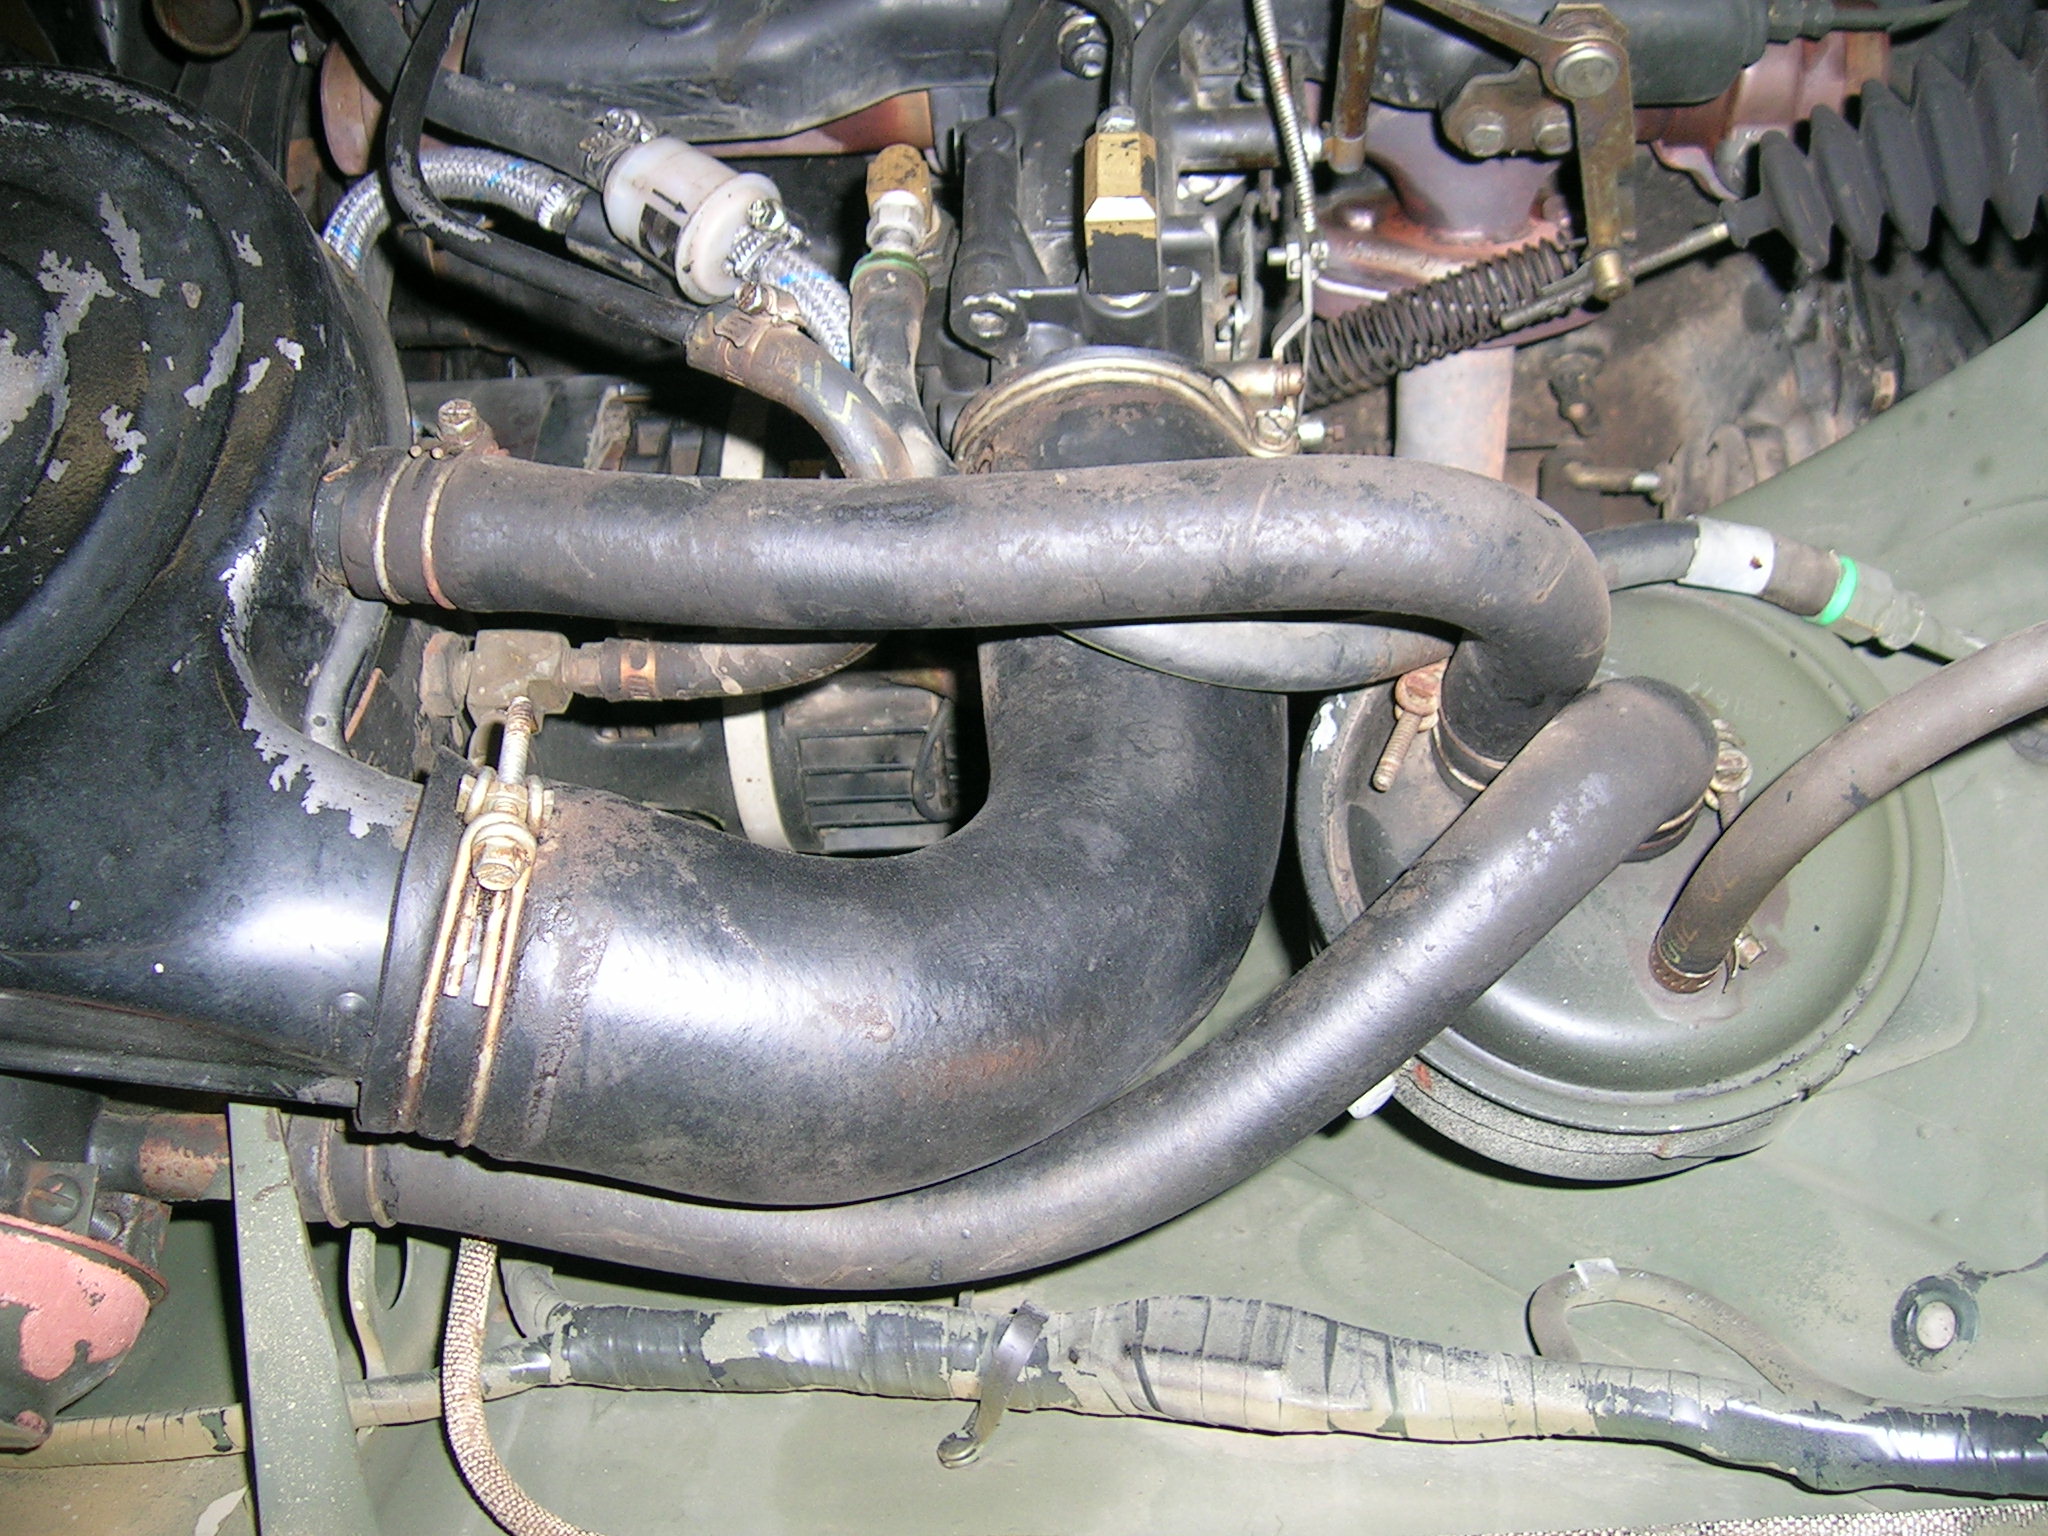 So sah der Motorraum des M151 A2 vorher aus